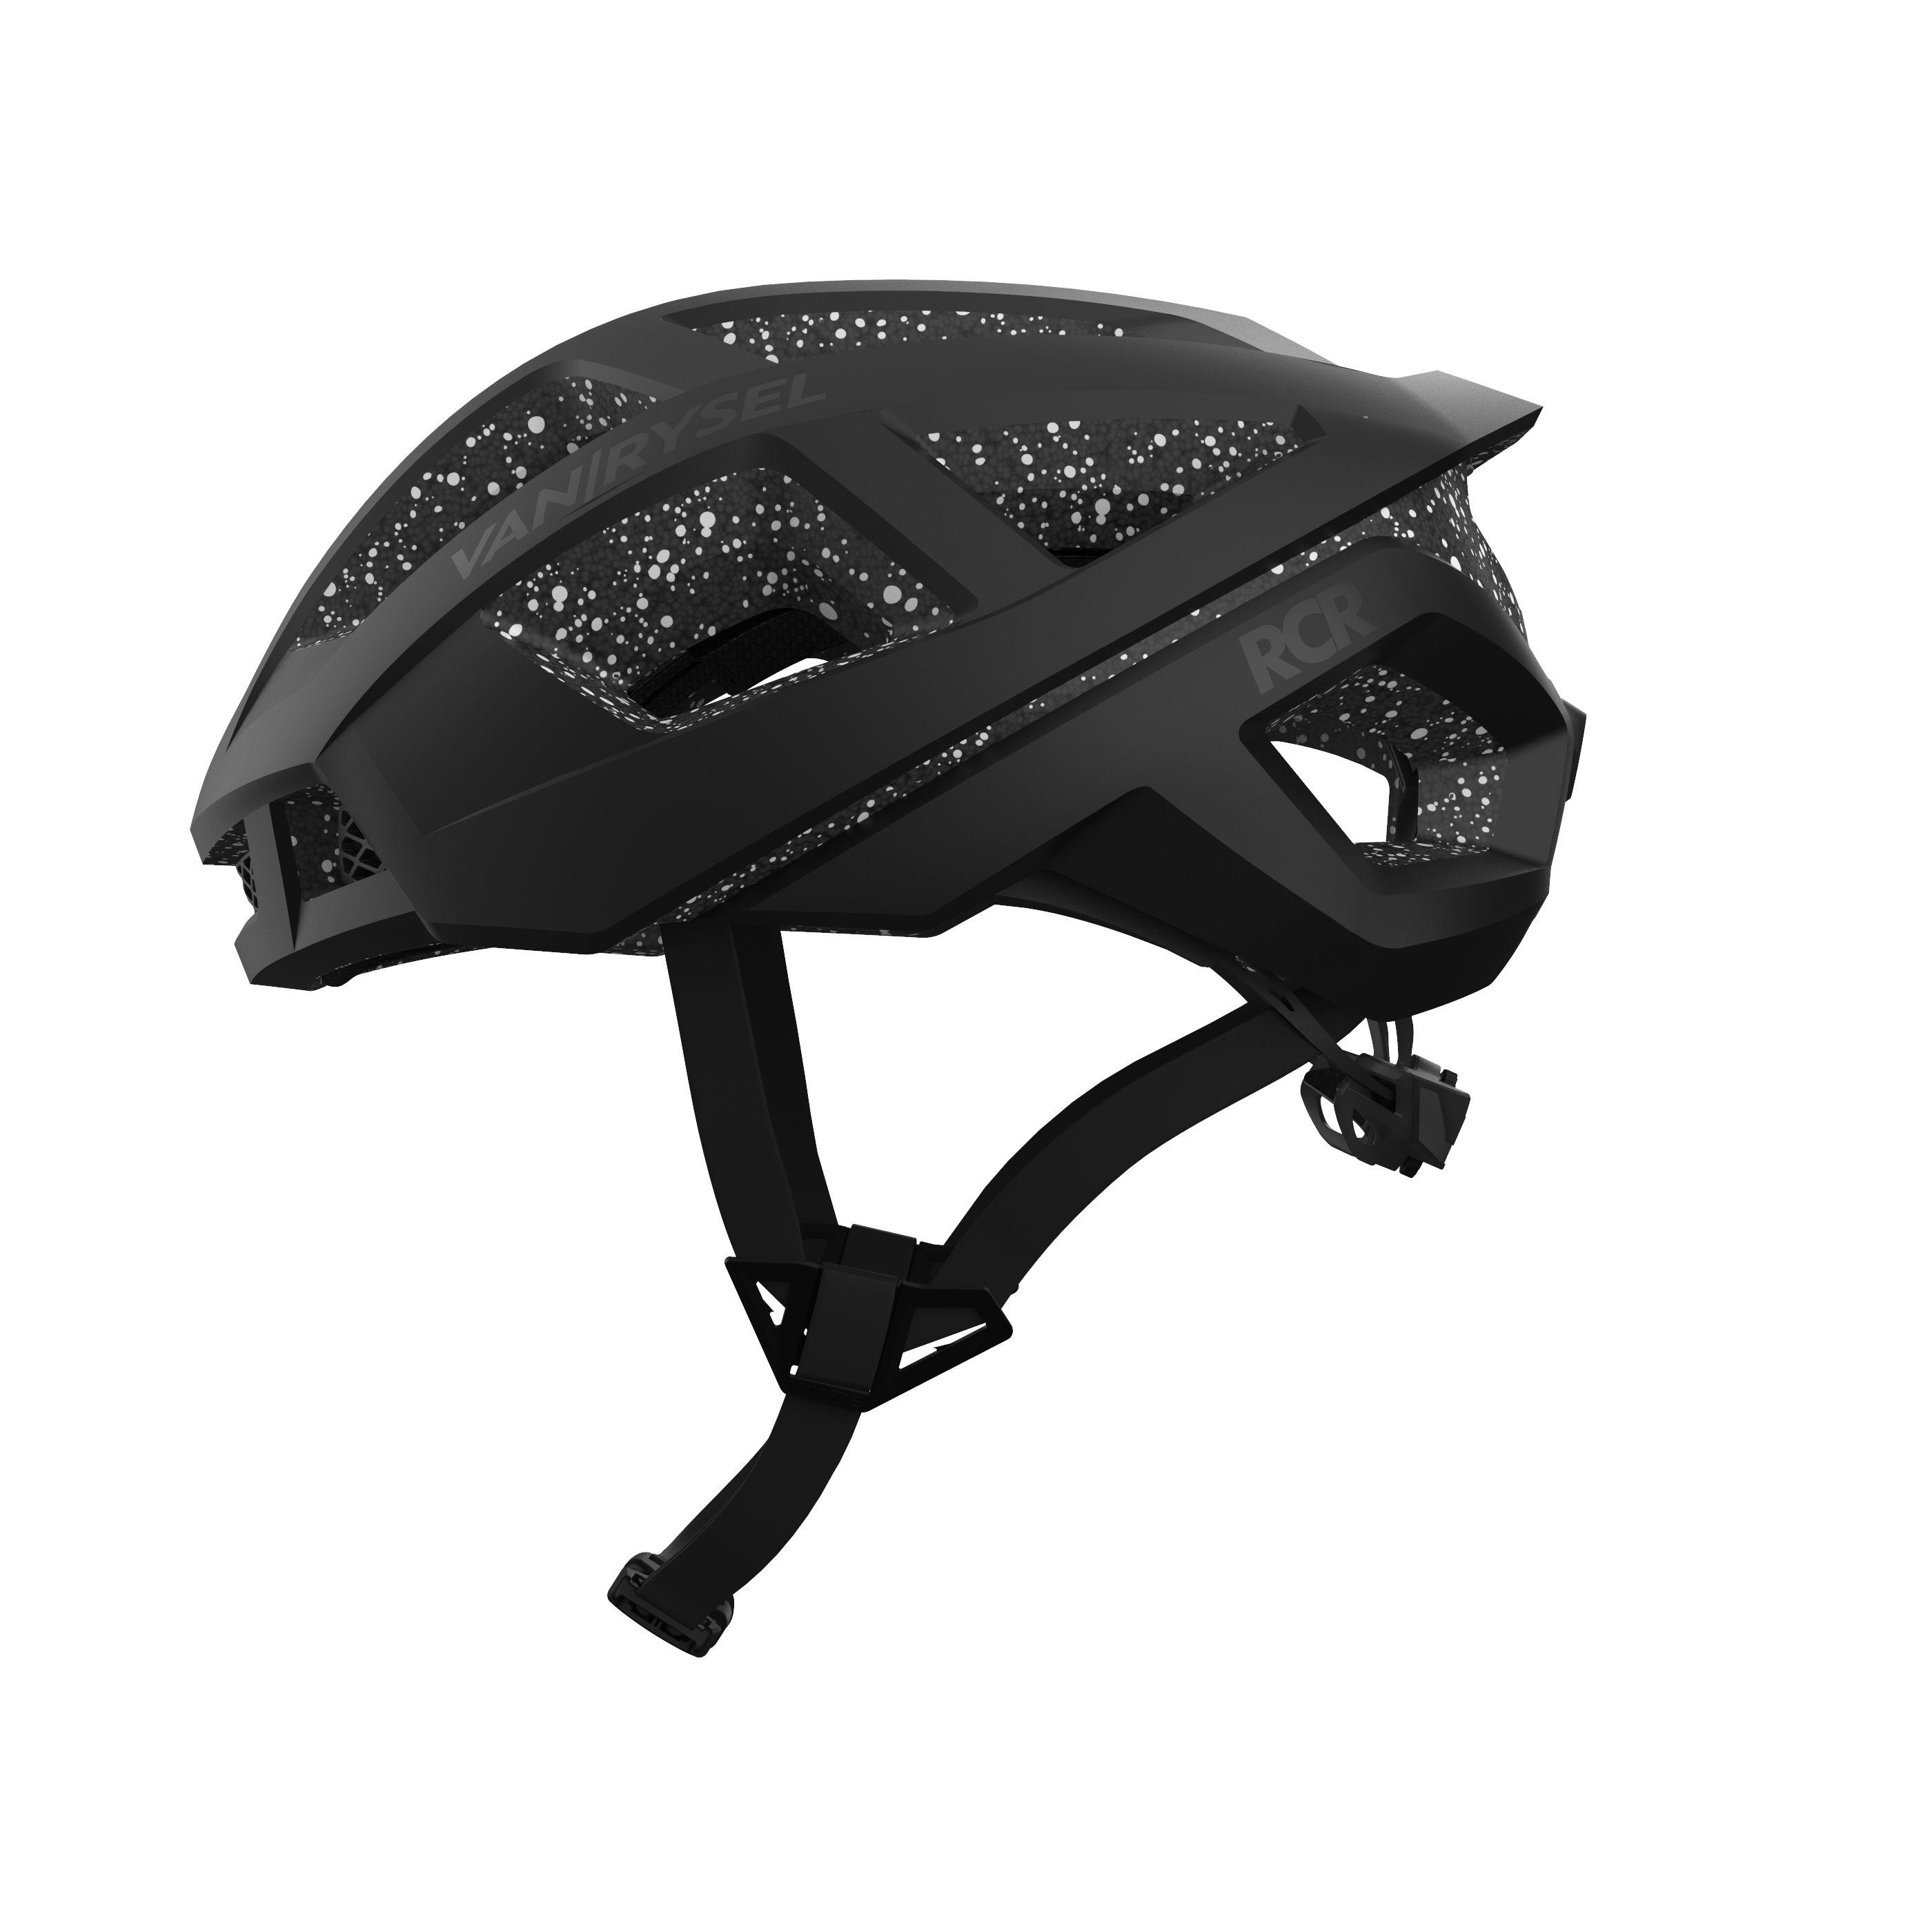 VAN RYSEL Racer Cycling Helmet - Spotted Black